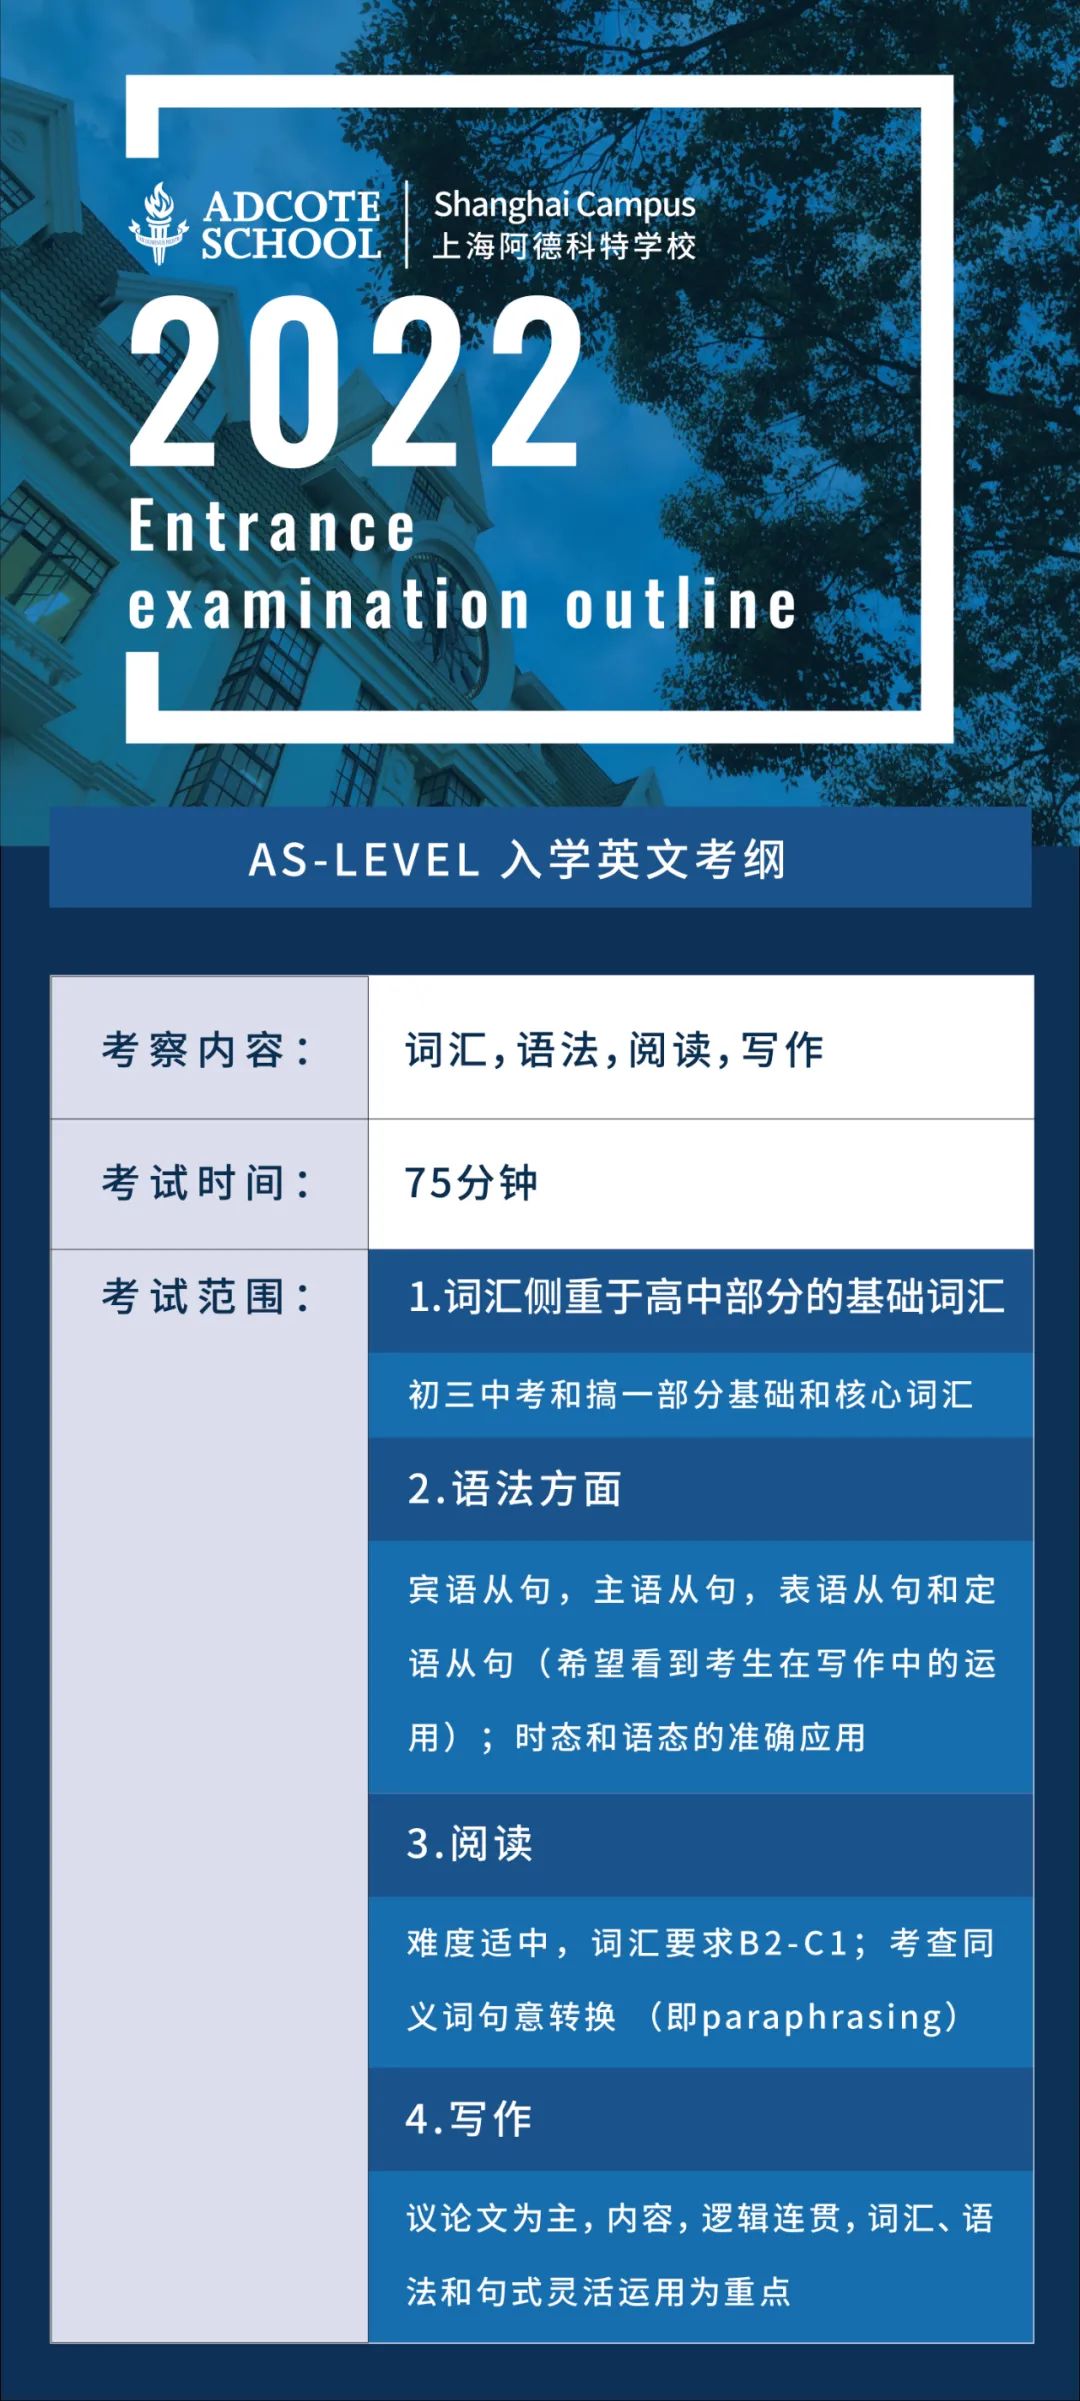 4月23日线上入学考试 | 上海阿德科特学校